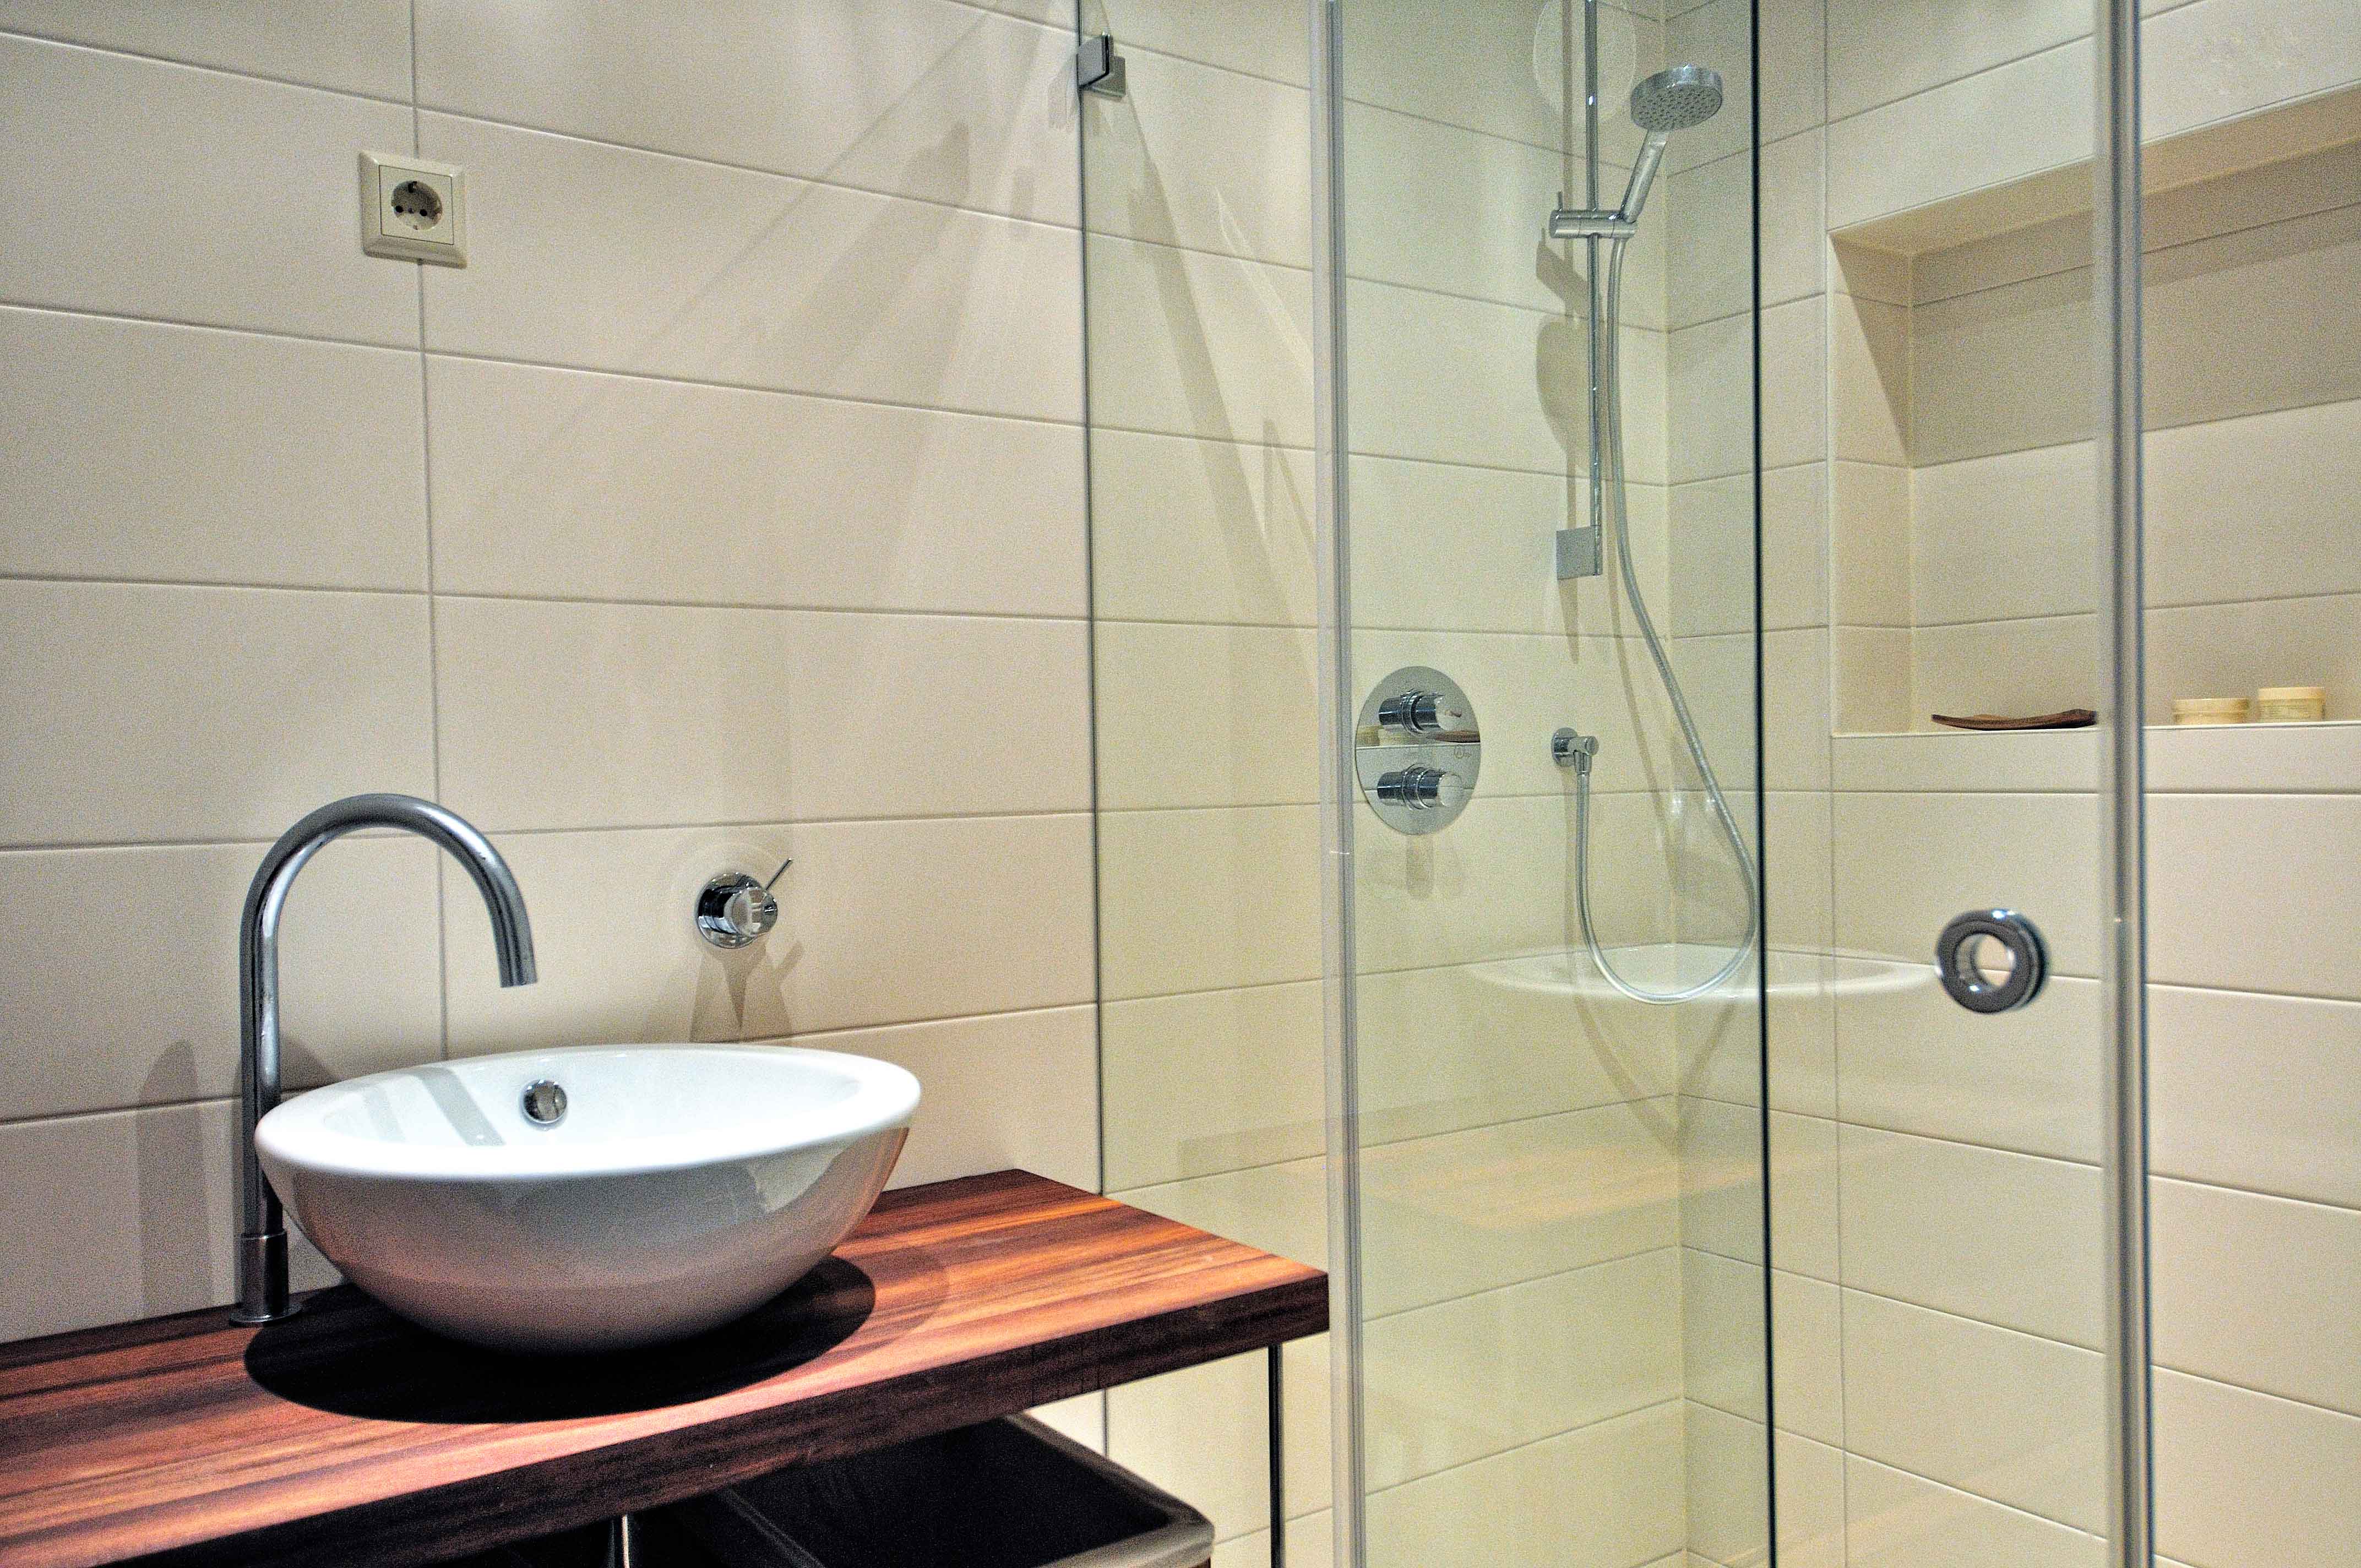 Ontwerp voor spa wellness in villa zeist door amsterdamse architect maxim winkelaar. Zwembad met tegenstroom en houten sauna.